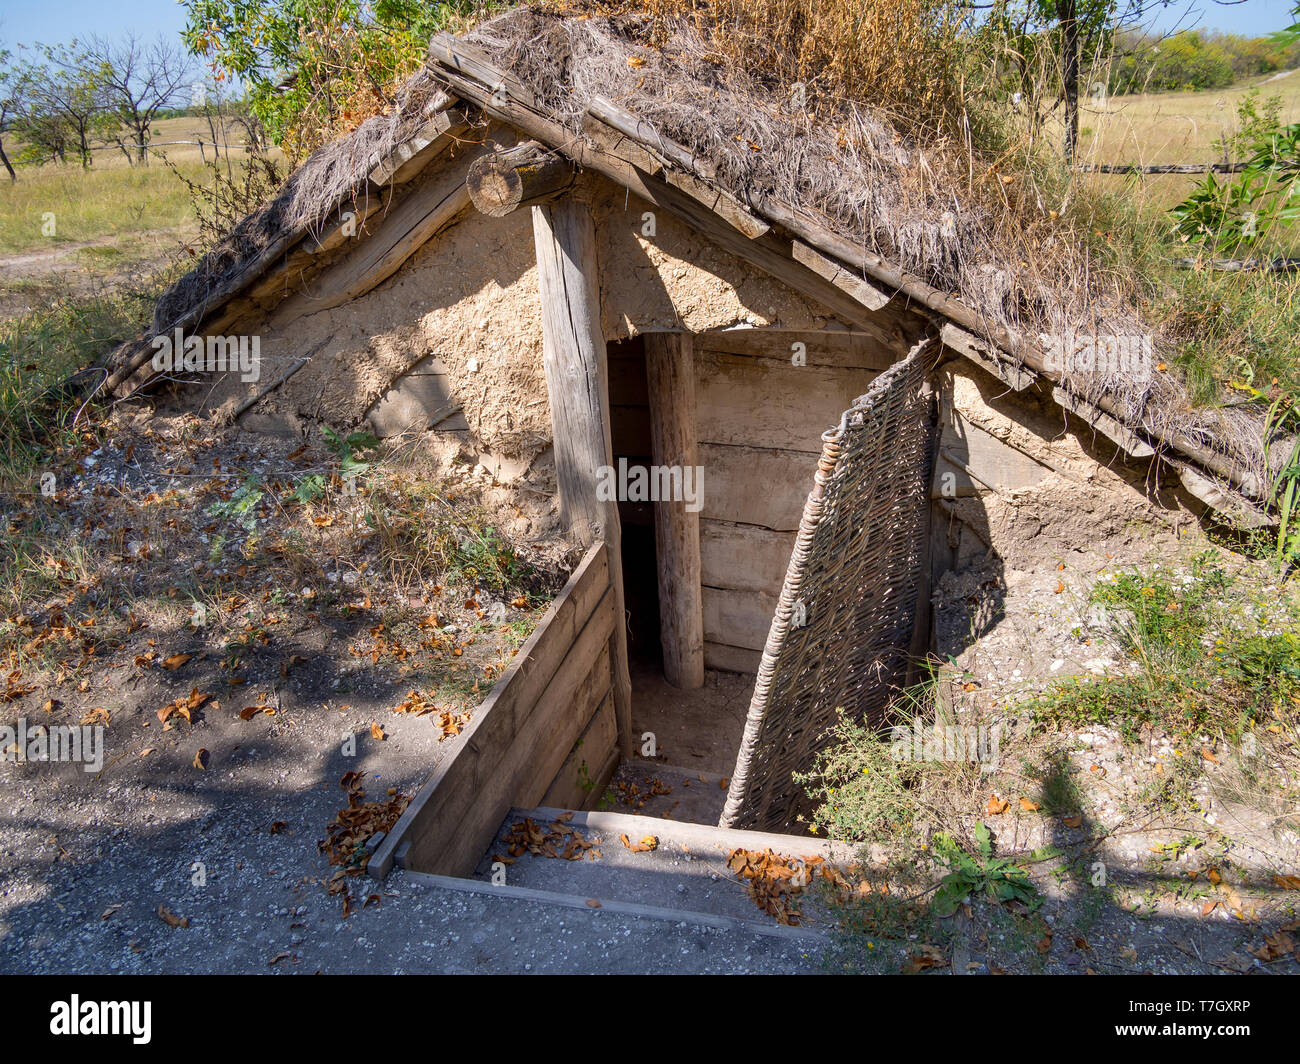 La reconstruction d'une semi-dugout, 'parc archéologique des nomades vers les villes", Divnogorye, région de Voronezh Banque D'Images